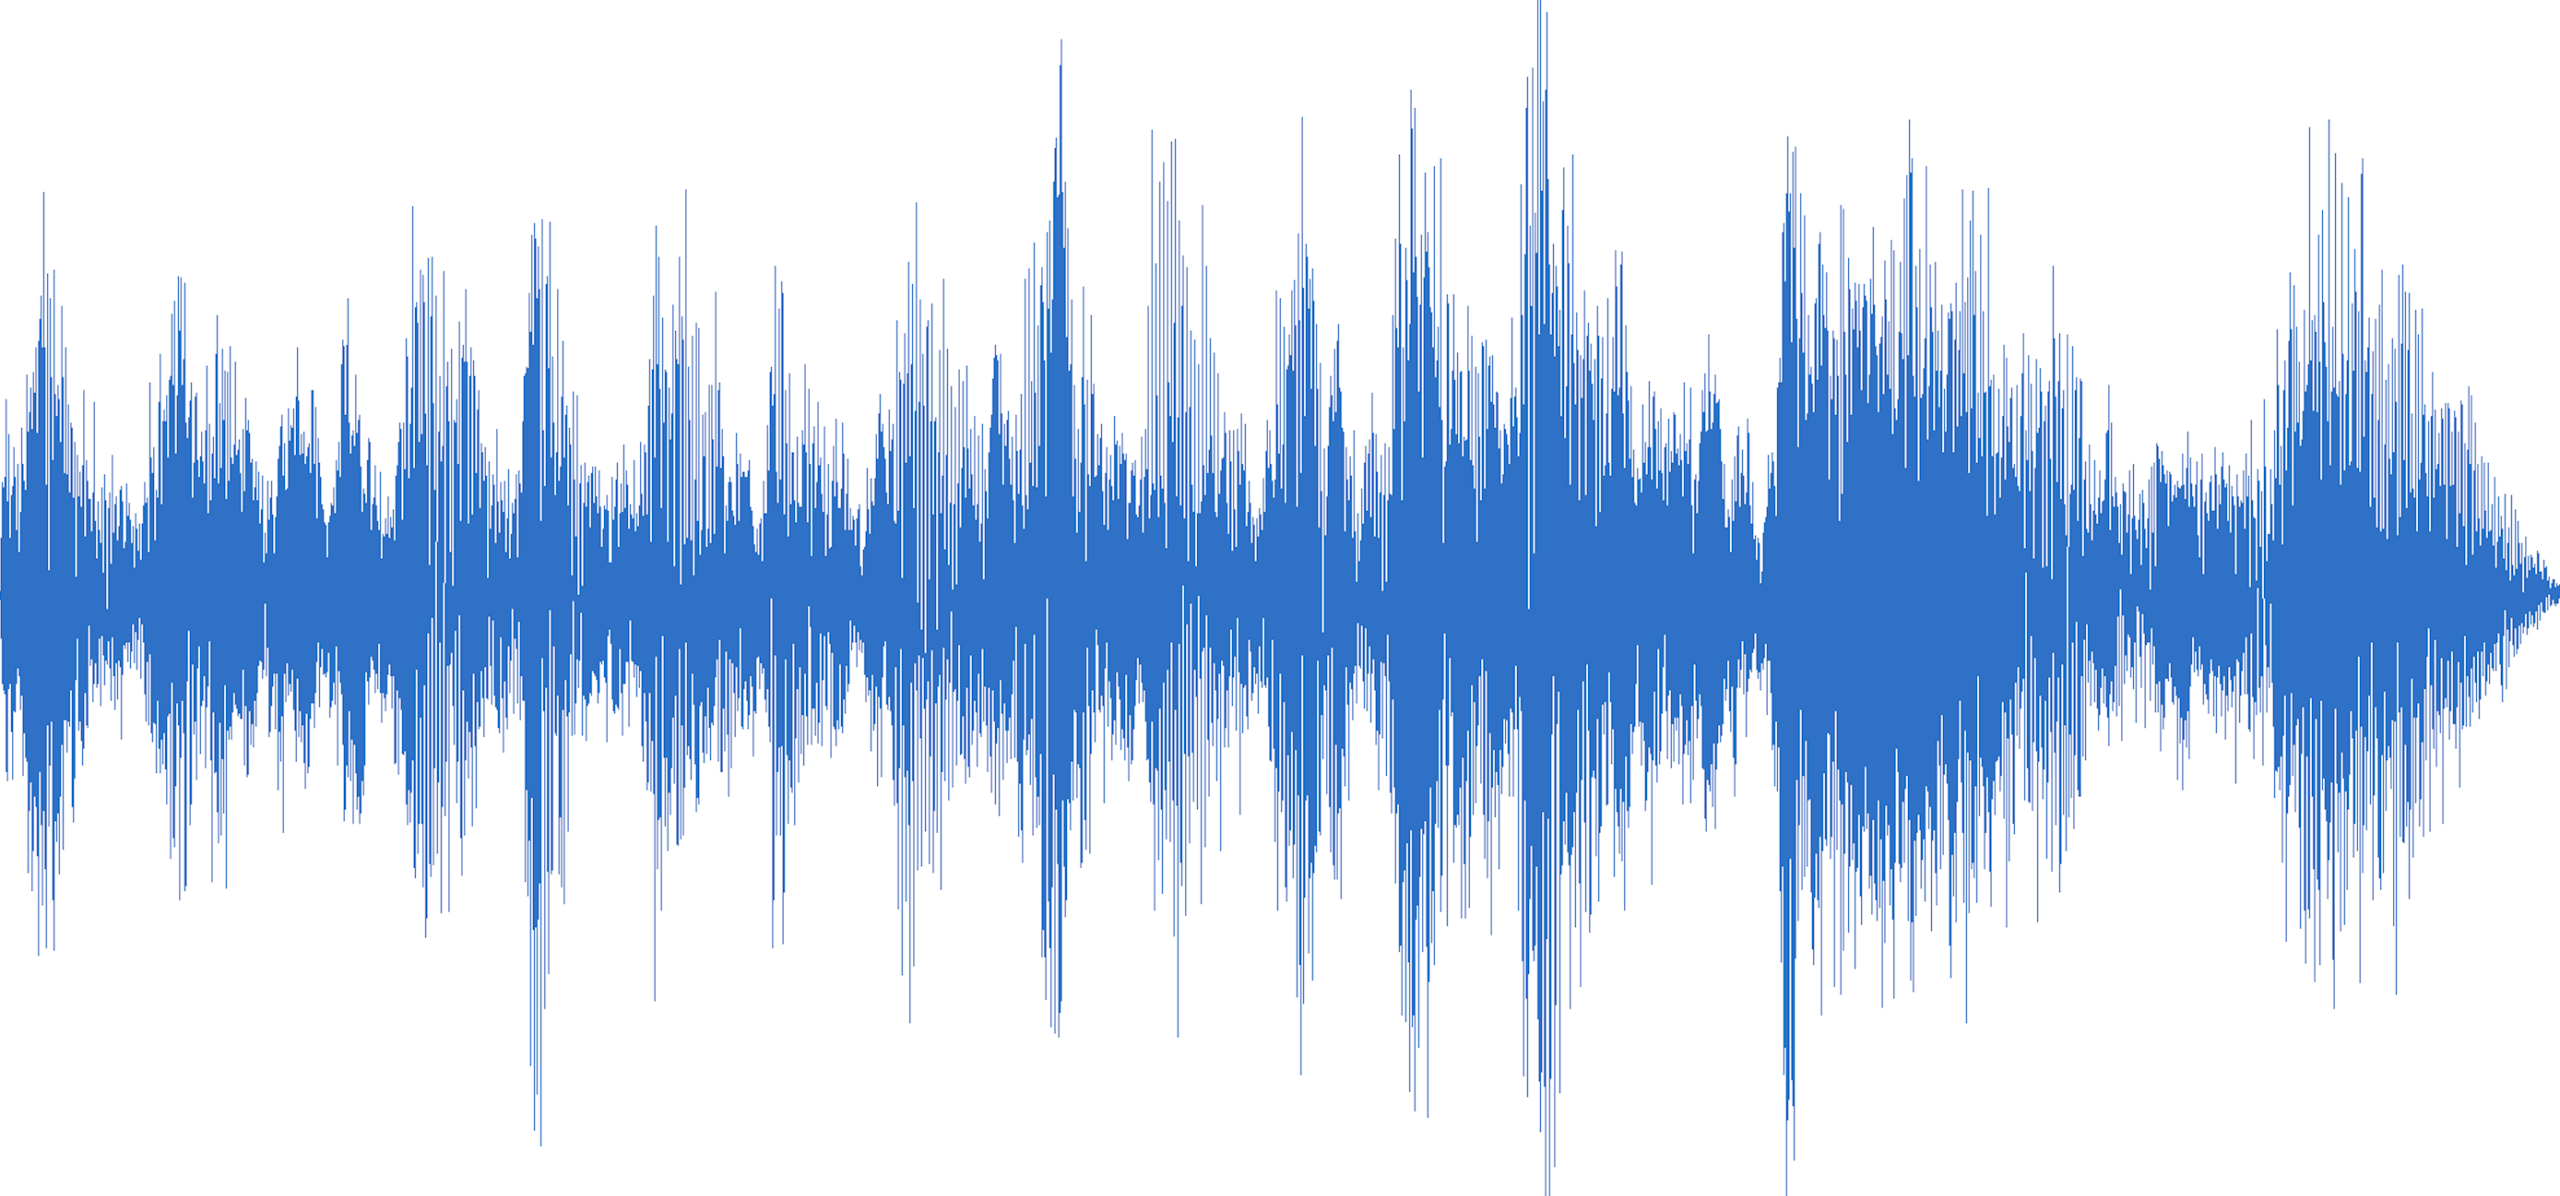 Звуковая волна. Звуковая дорожка. Звуковая волна на белом фоне. Изображение звука.